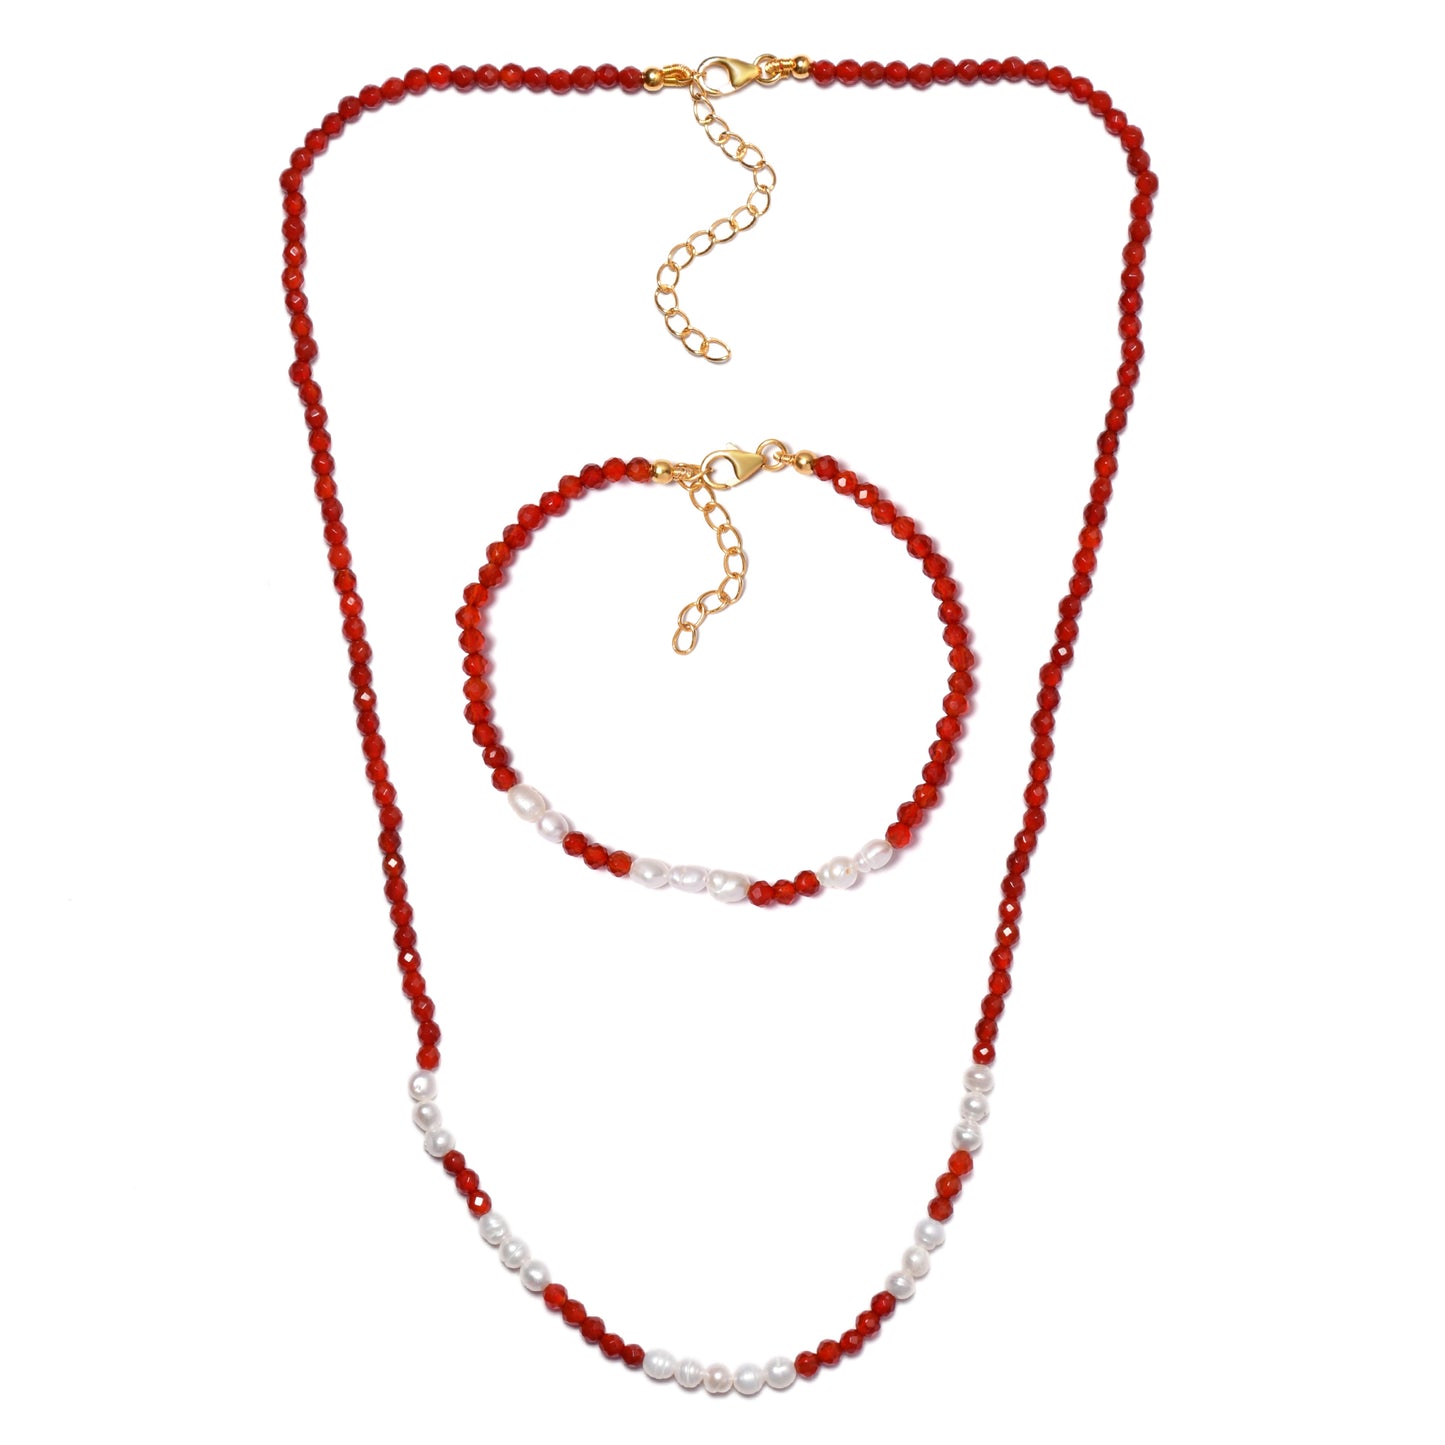 Pozlacená Stříbrná Sada s Červeným Onyxem a Perleťová mušle ( Náhrdelník+Náramek )